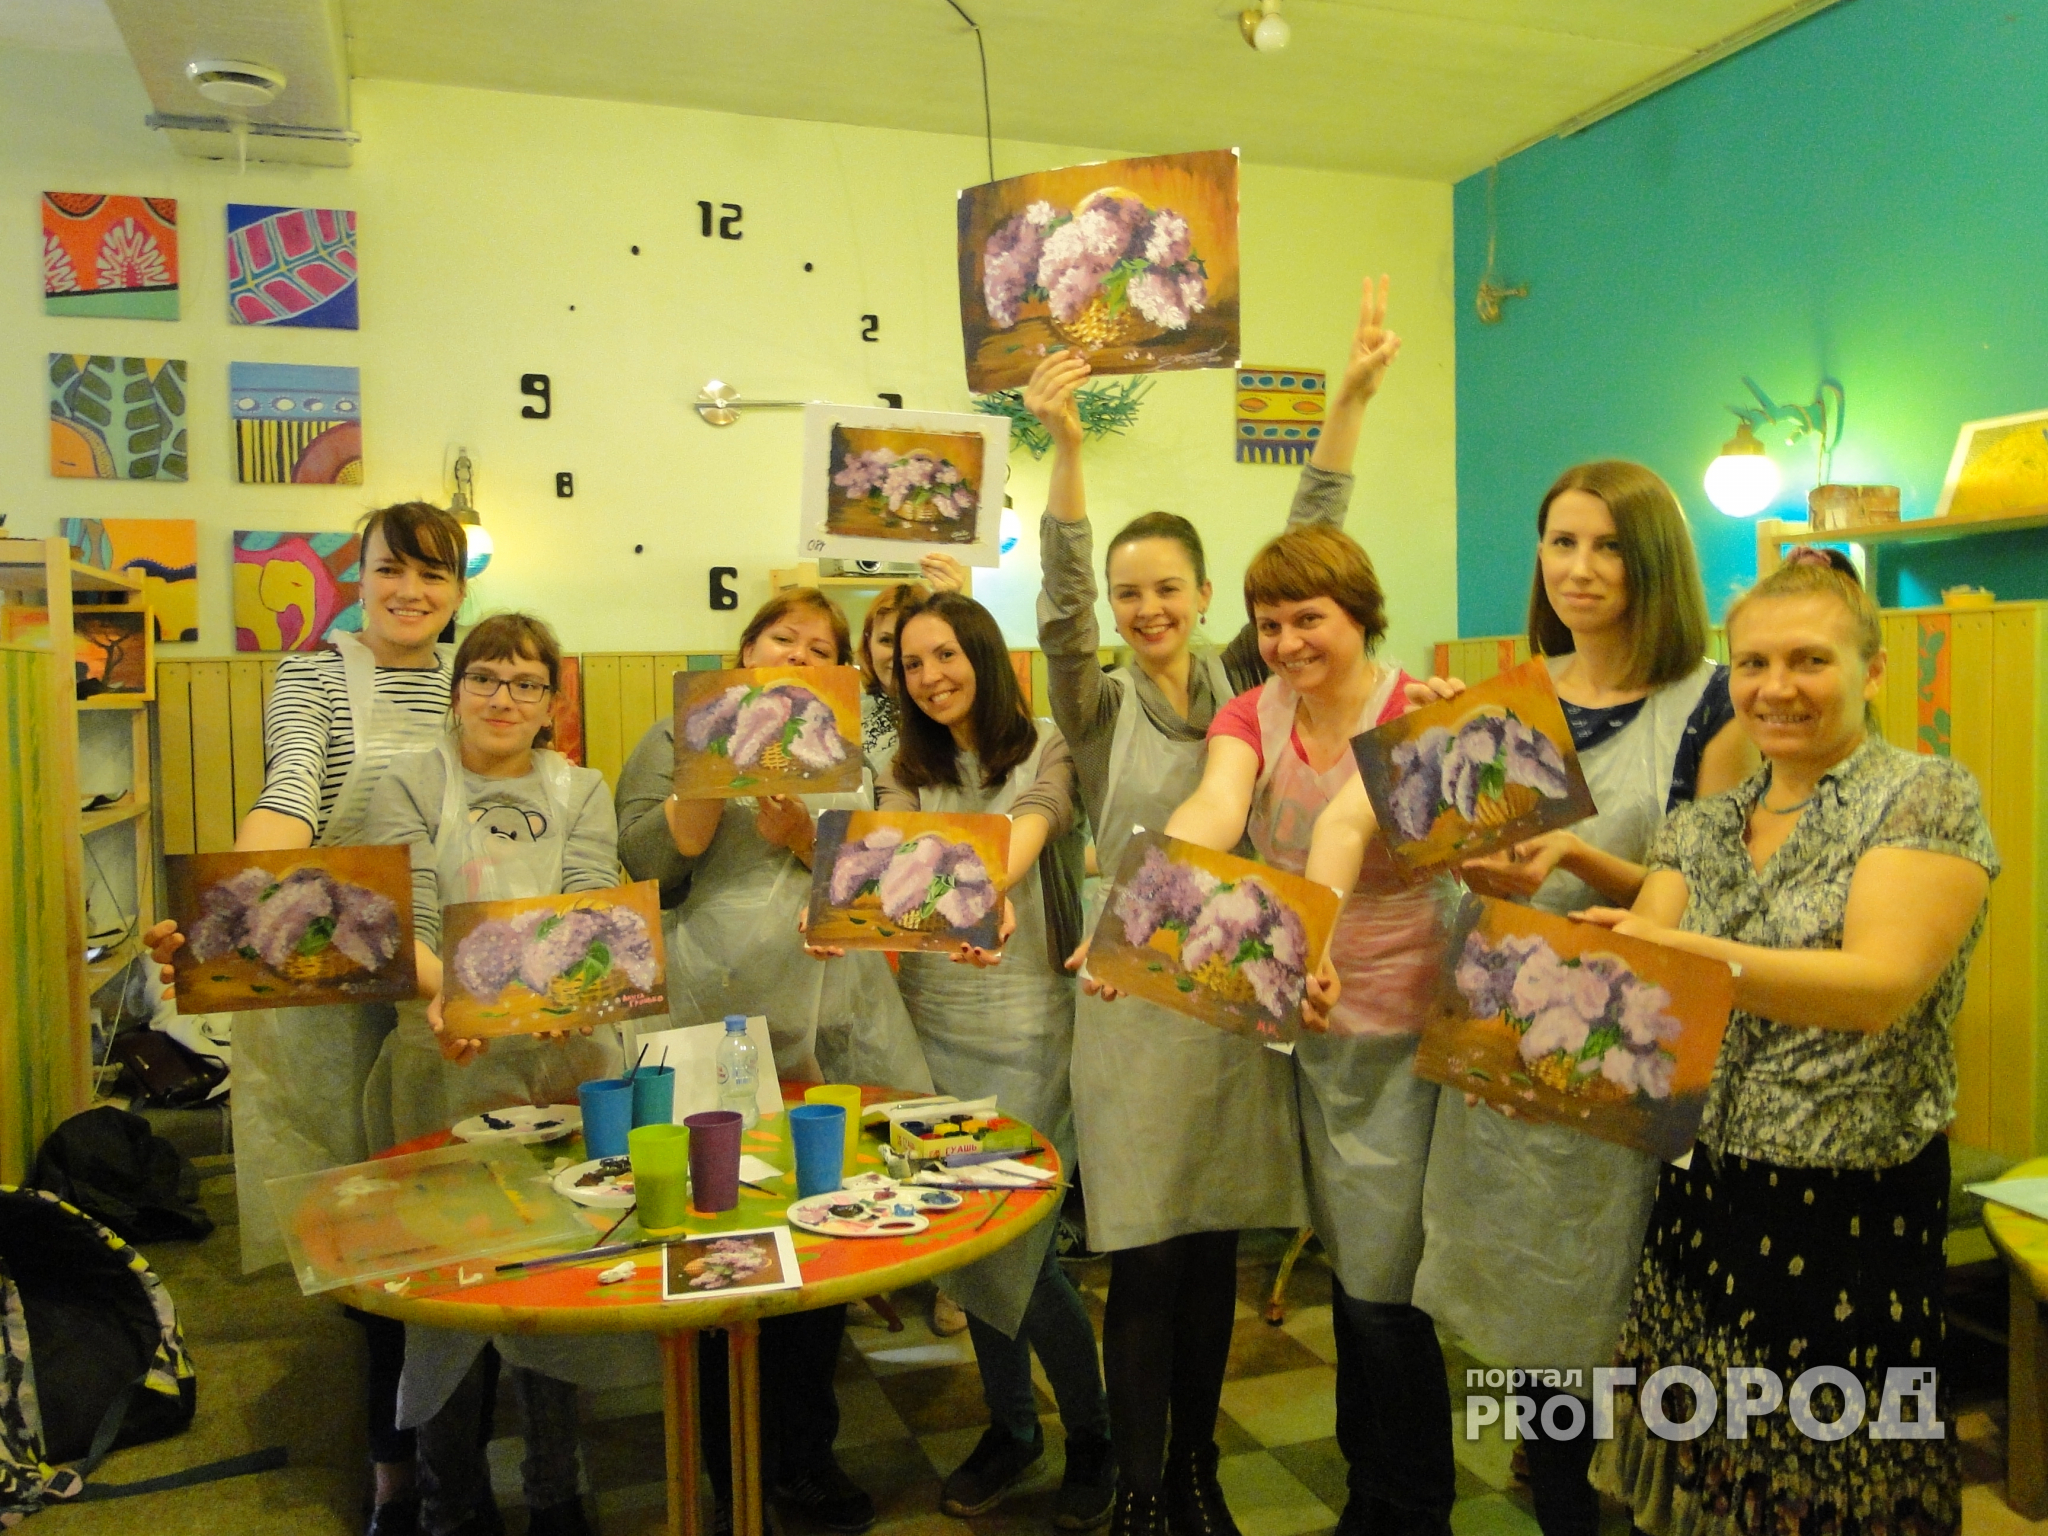 Рязанская художница: "Могу научить рисованию за несколько часов"